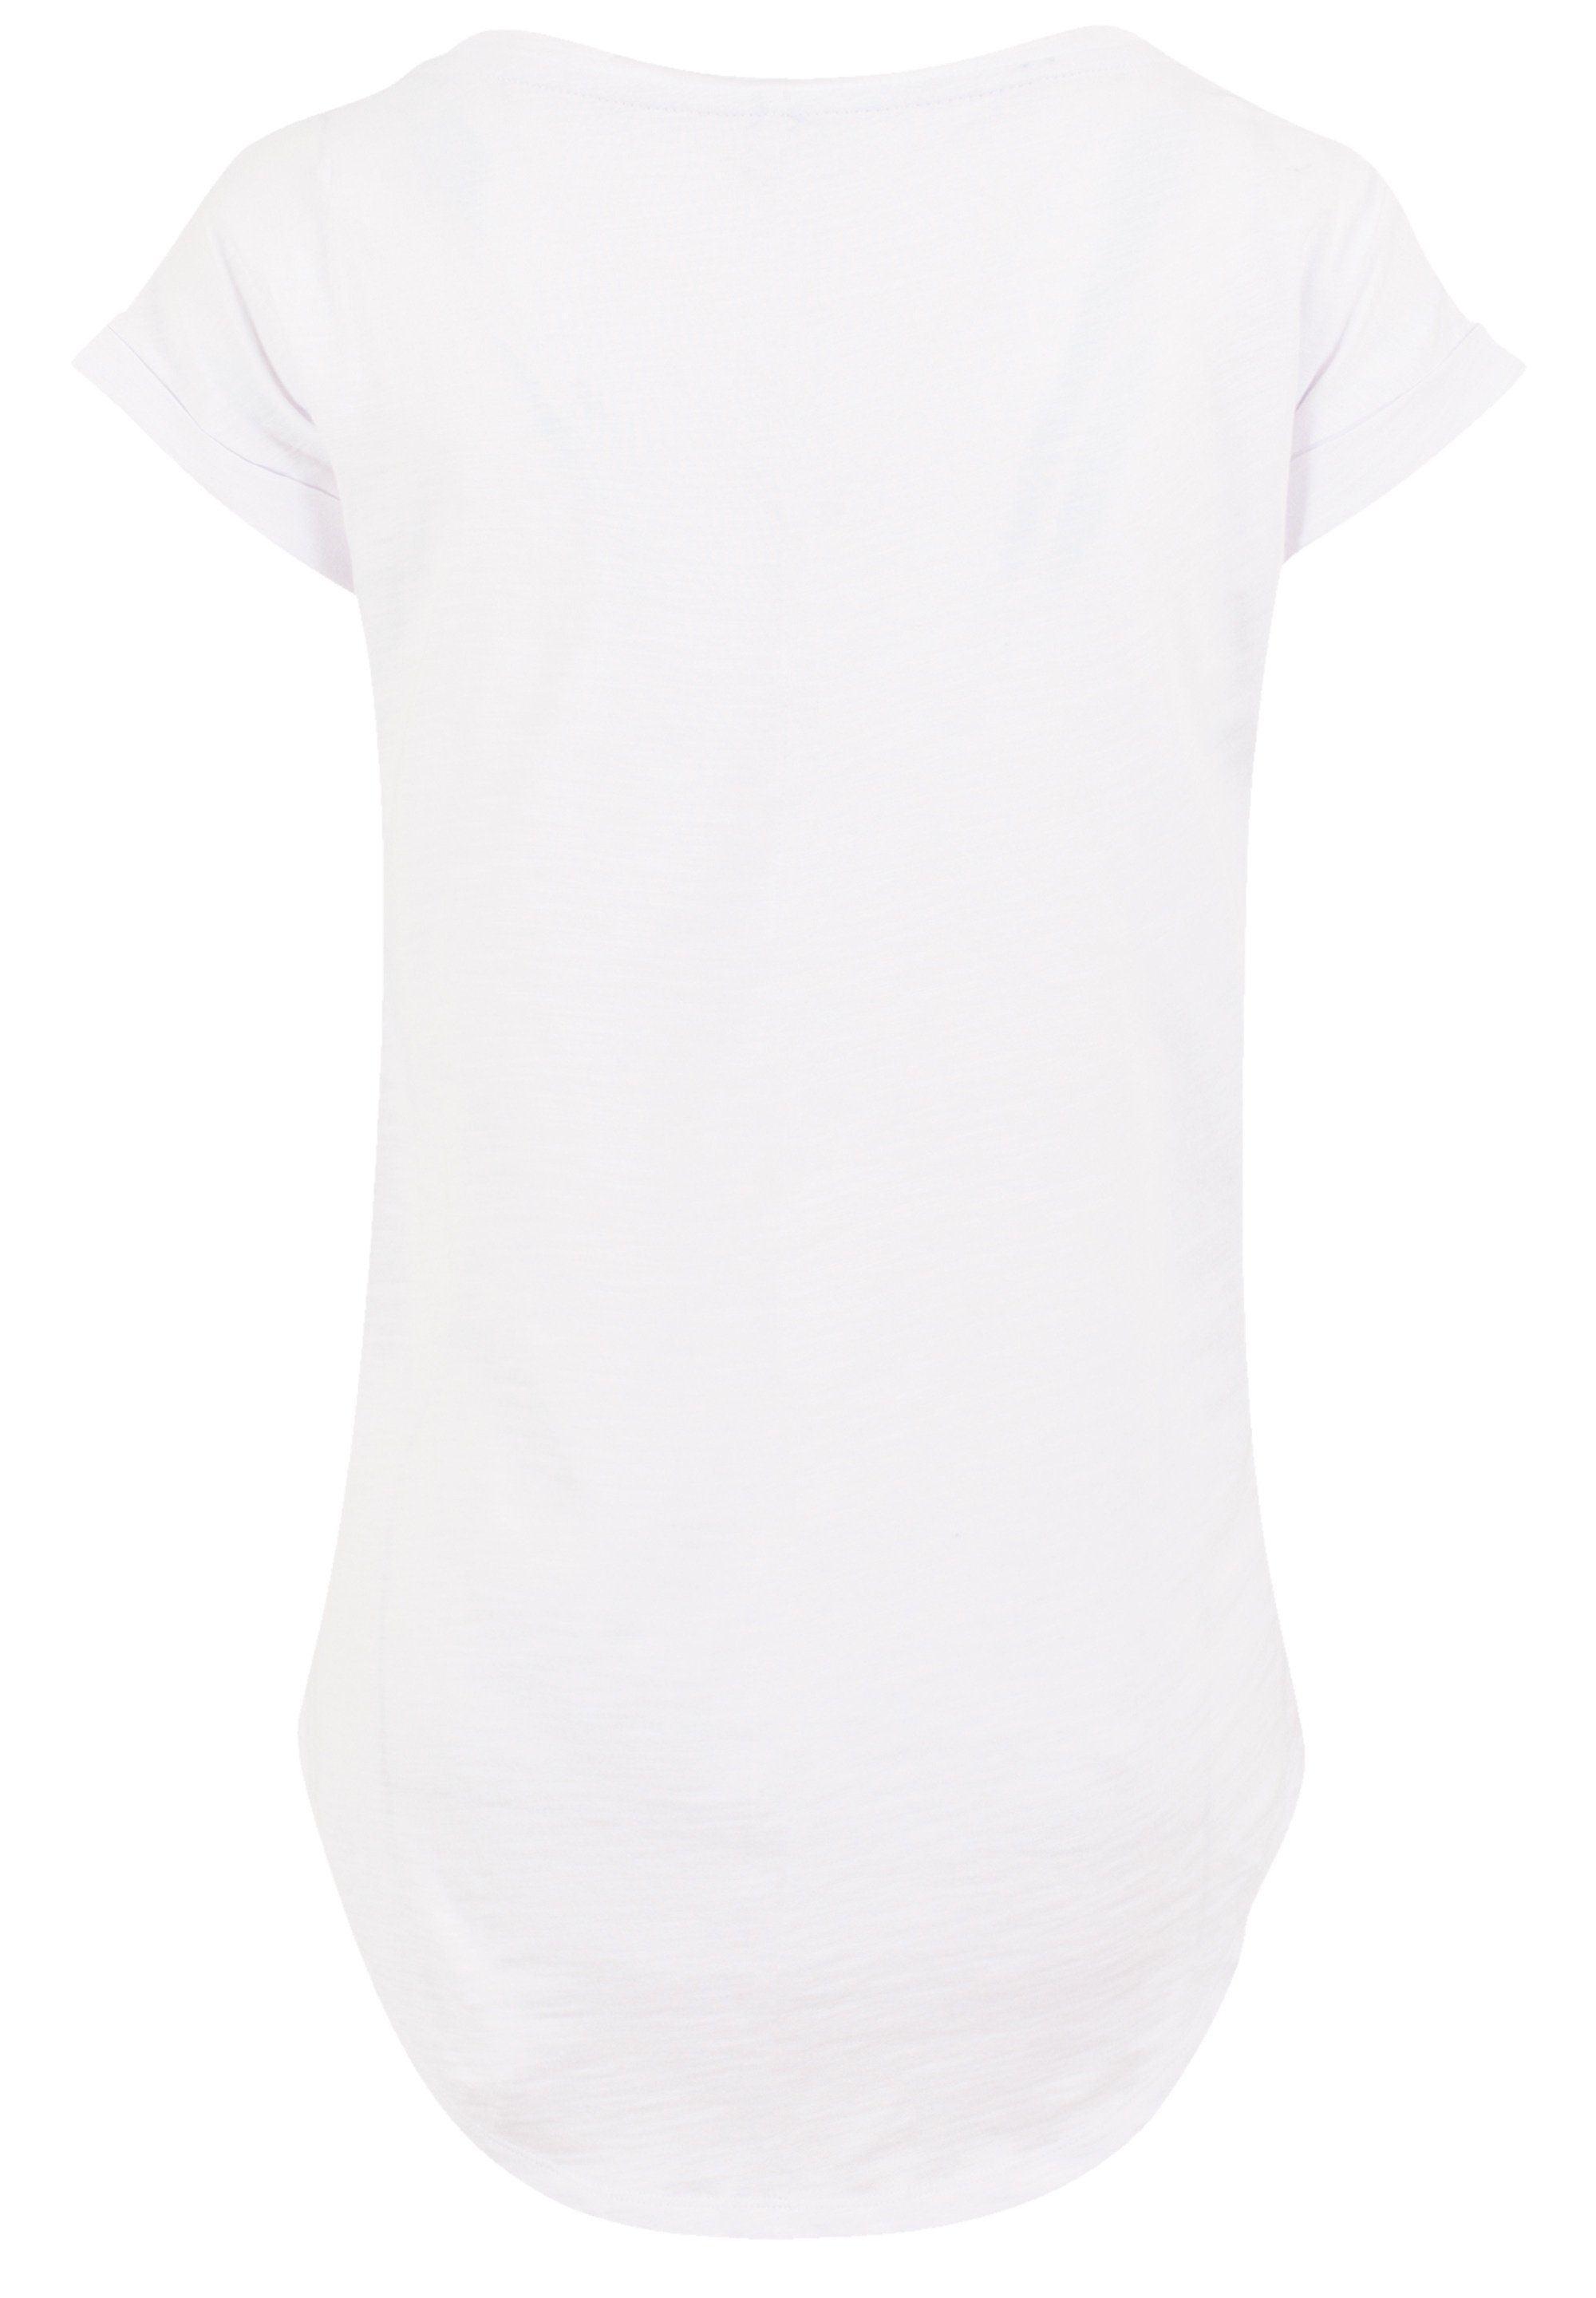 Premium T-Shirt Dumbo Disney lang extra Damen F4NT4STIC Qualität, T-Shirt Hinten Dreamland geschnittenes